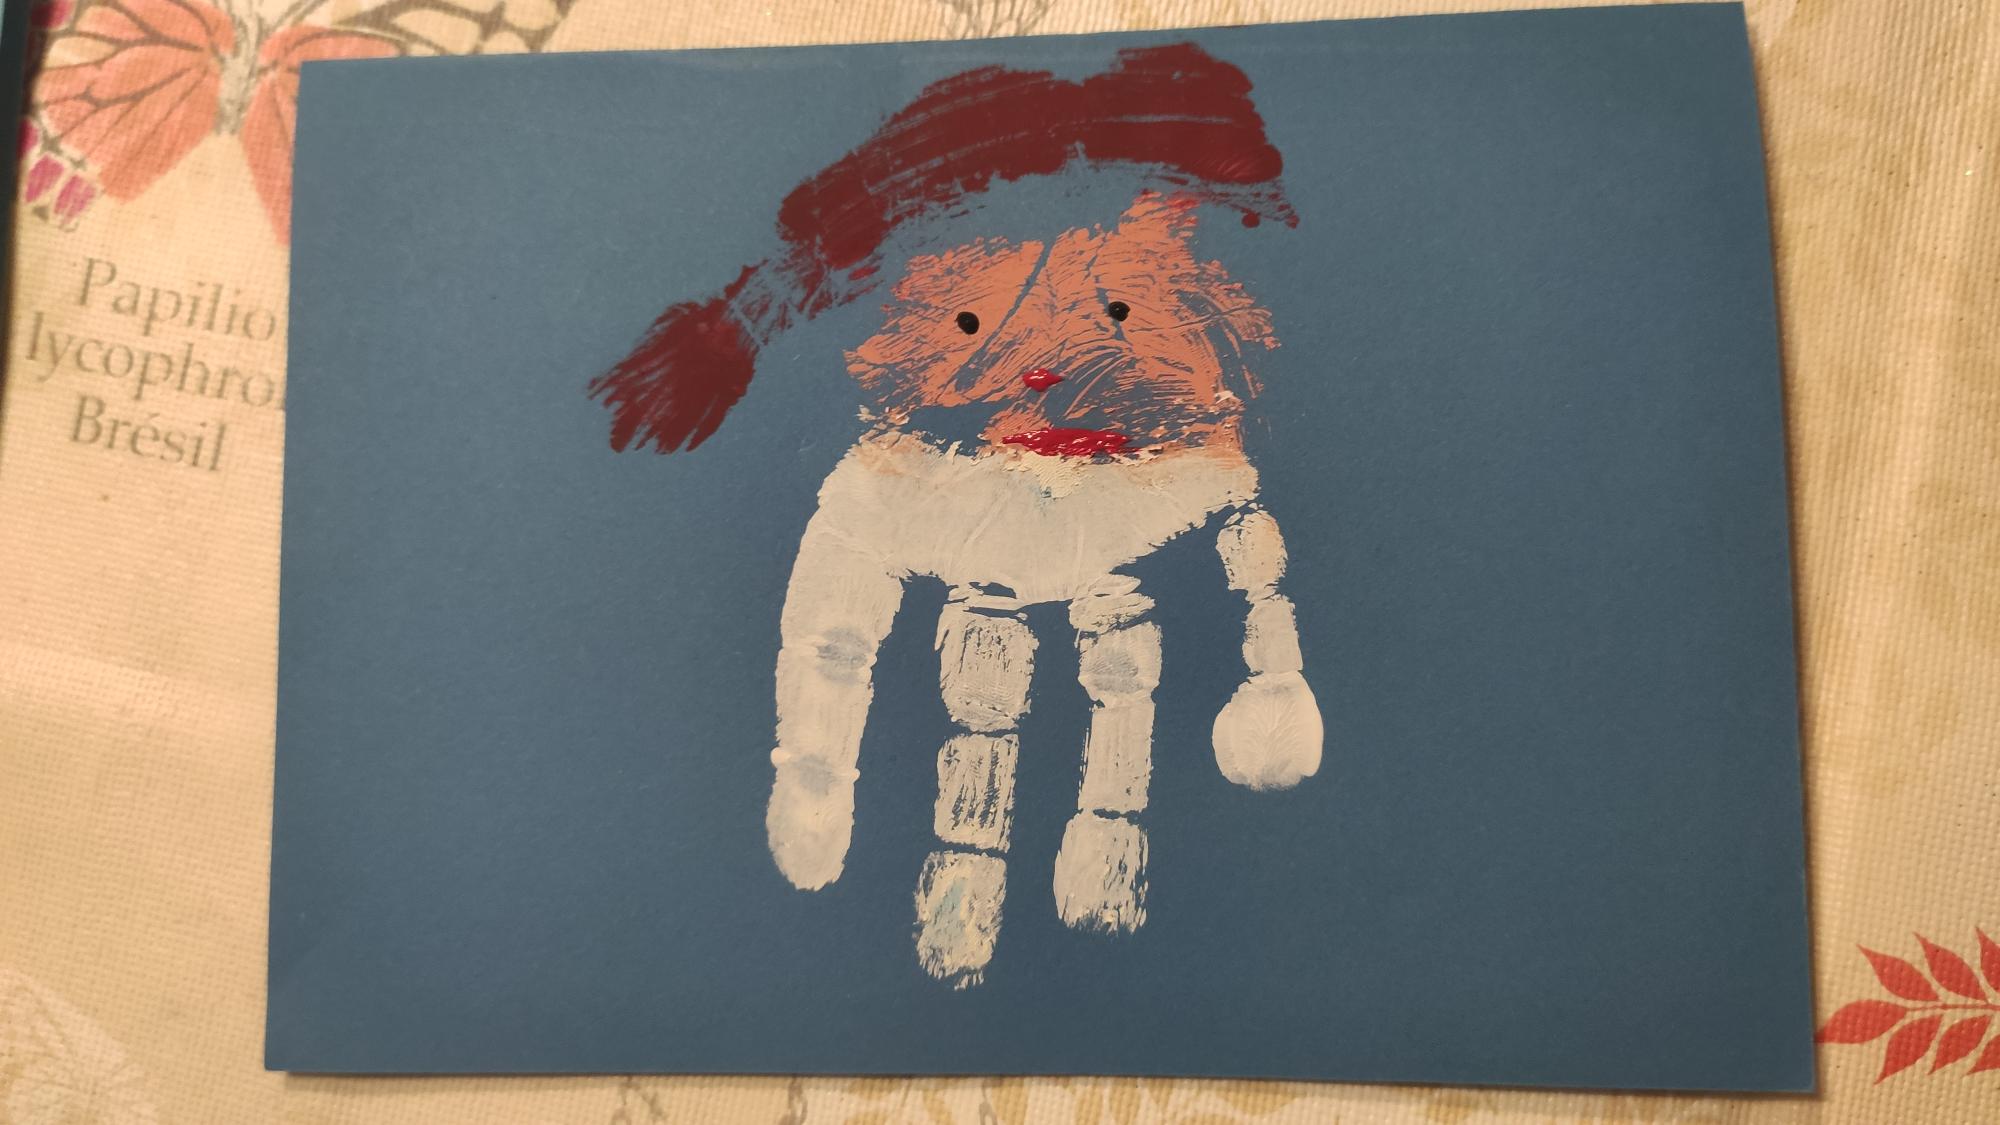 Bild zum Schritt 11 für das Bastel- und DIY-Abenteuer für Kinder: 'Fertig ist die Nikolauskarte oder Weihnachtsmannkarte.  Jetzt legt ihr...'